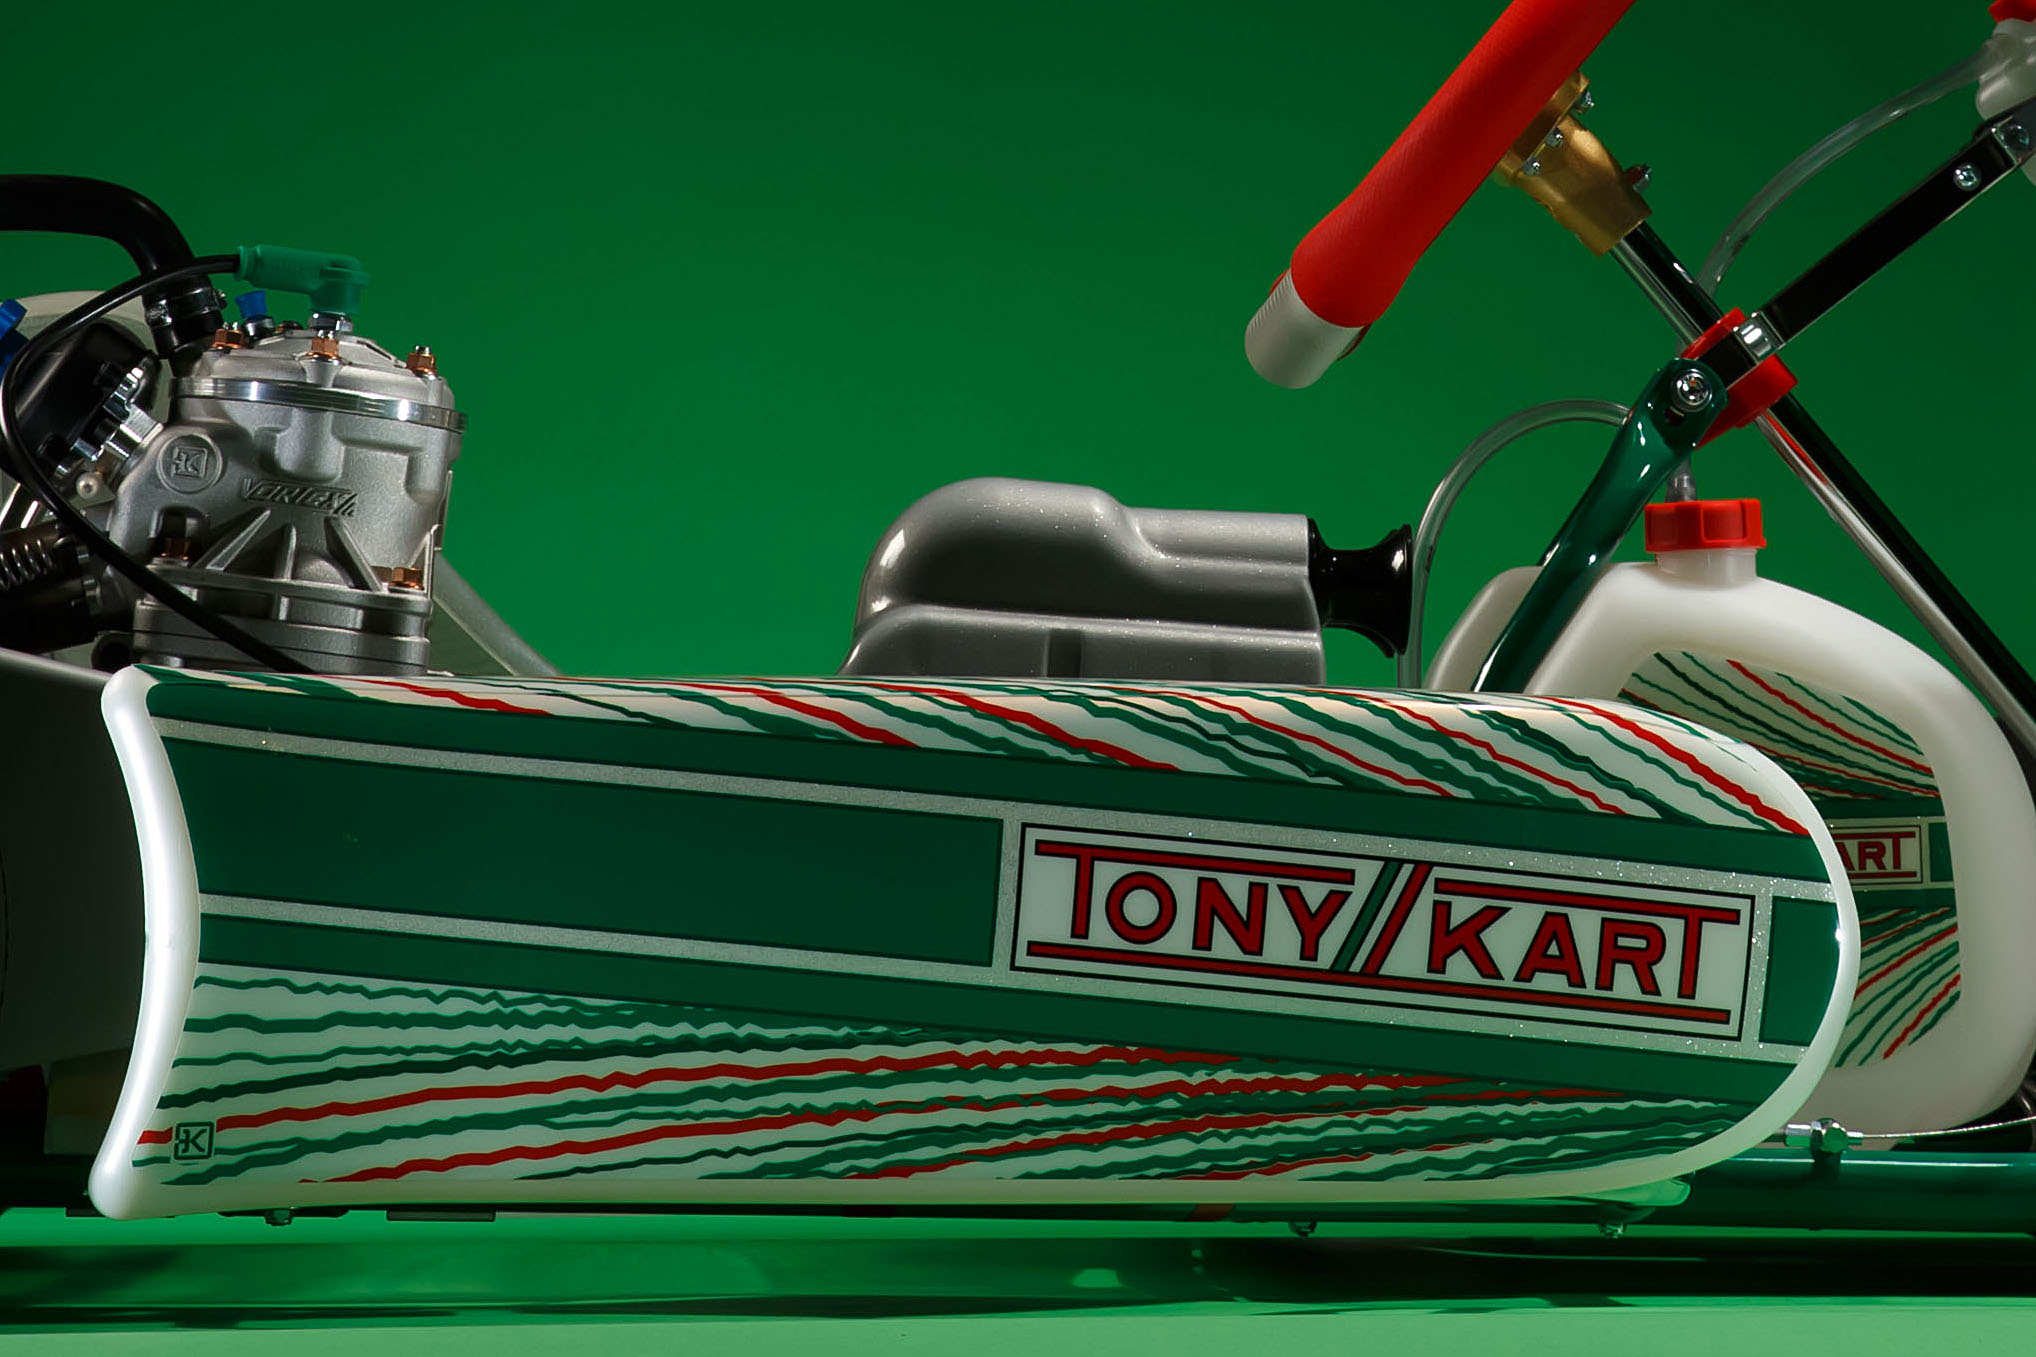 TonyKart Racer 401RR Rotax DD2